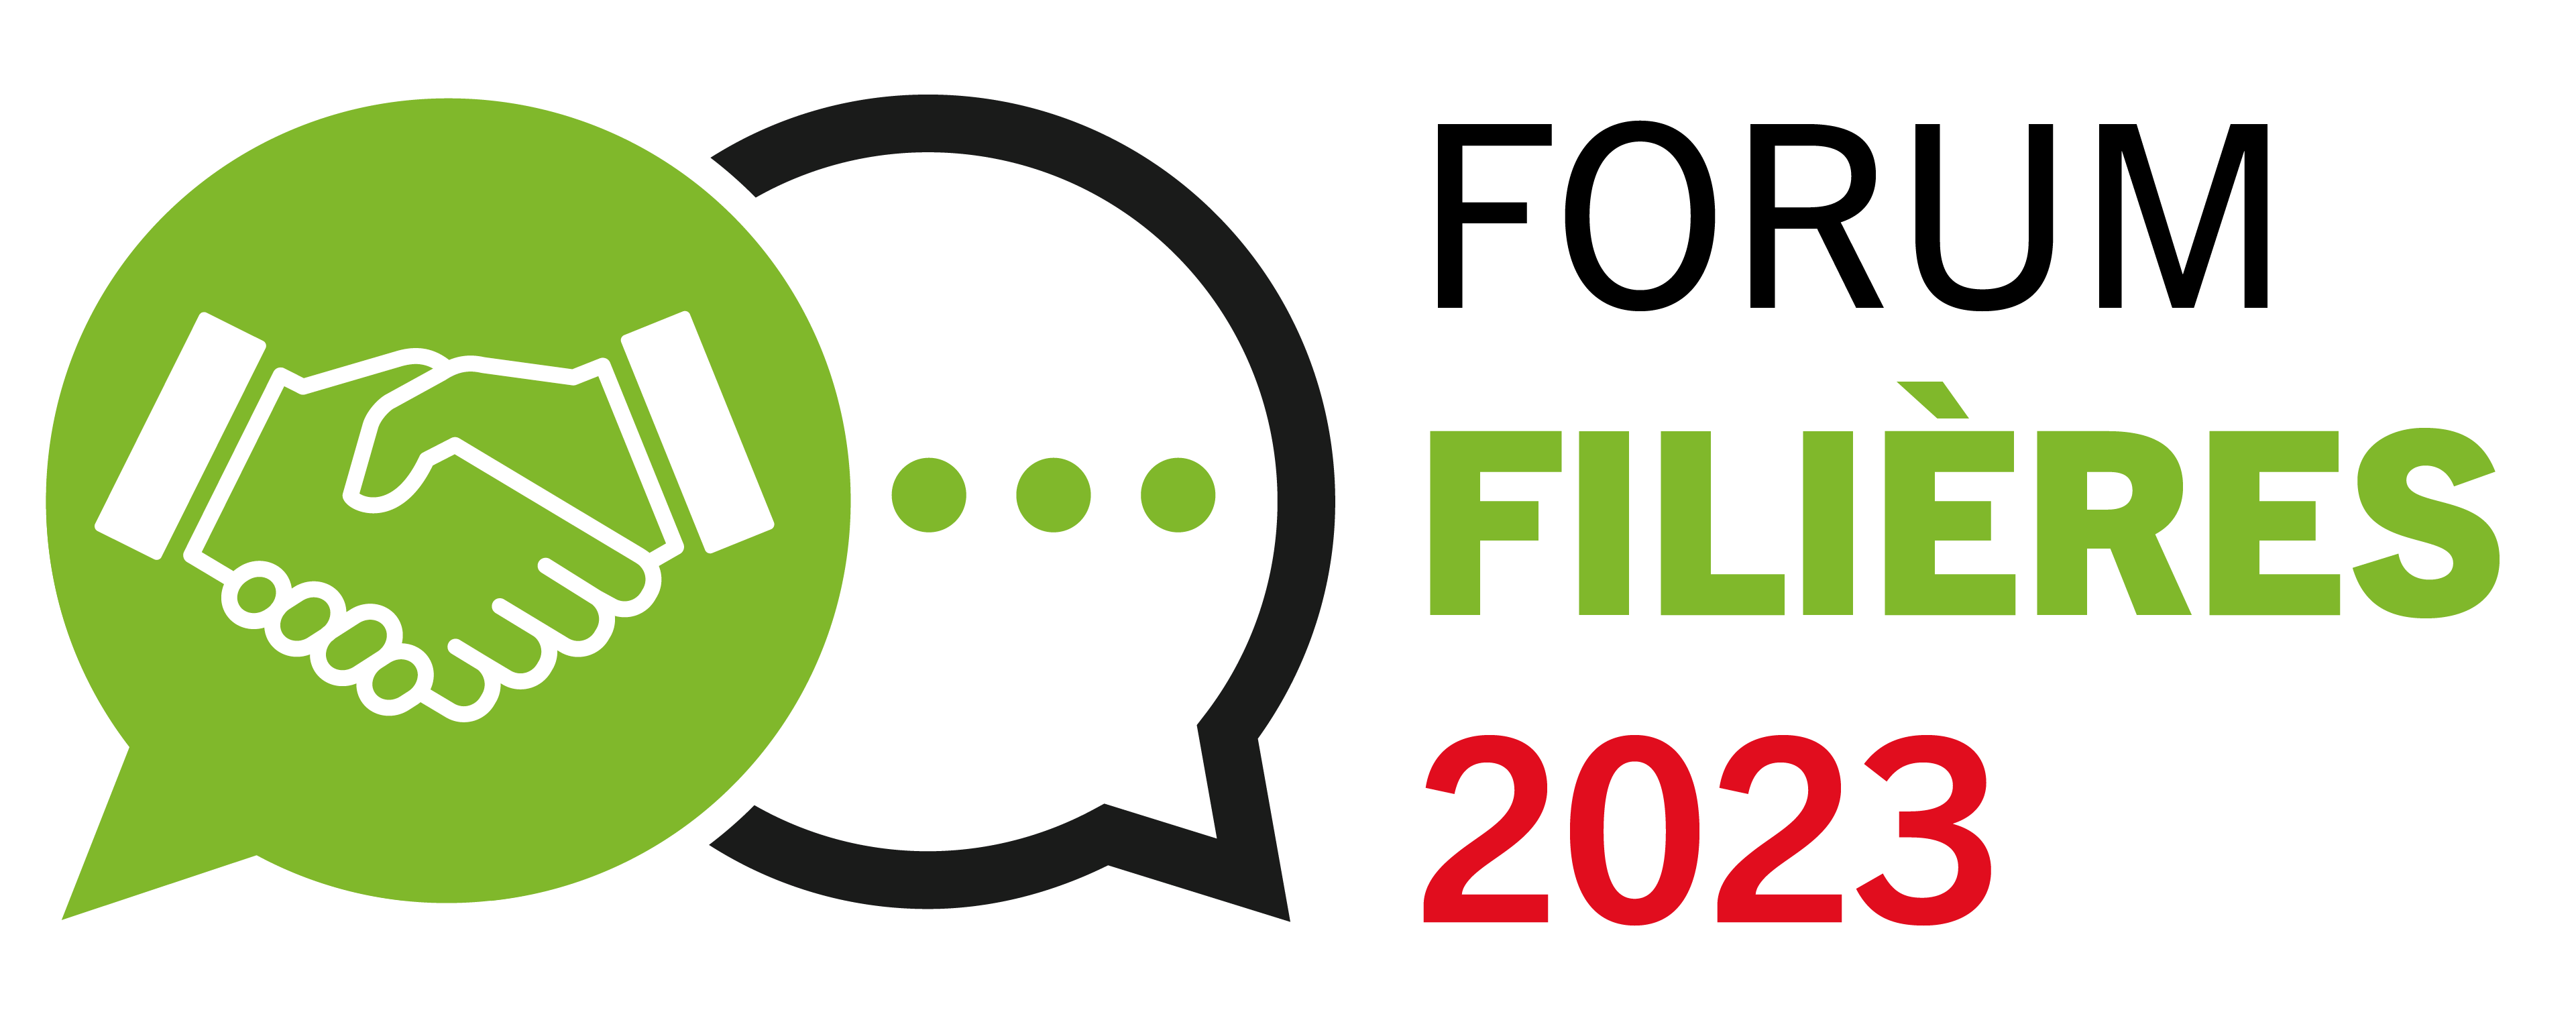 Forum Filières